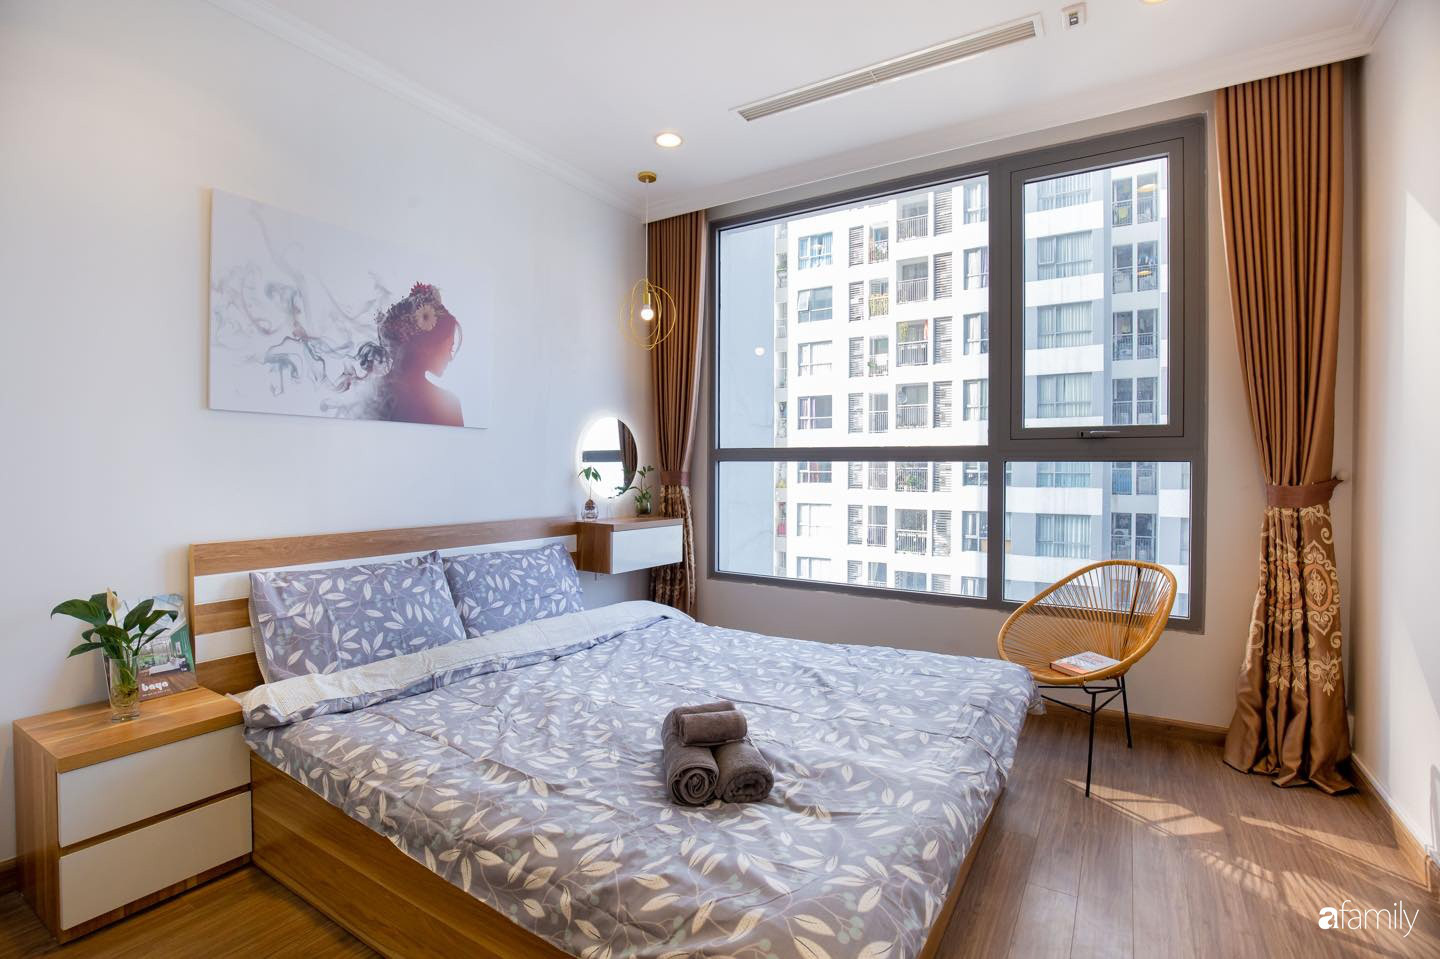 Thiết kế đơn giản với nội thất tiện nghi, căn hộ 53m2 trên tầng cao khiến nhiều người ao ước sở hữu ở Hà Nội - Ảnh 11.